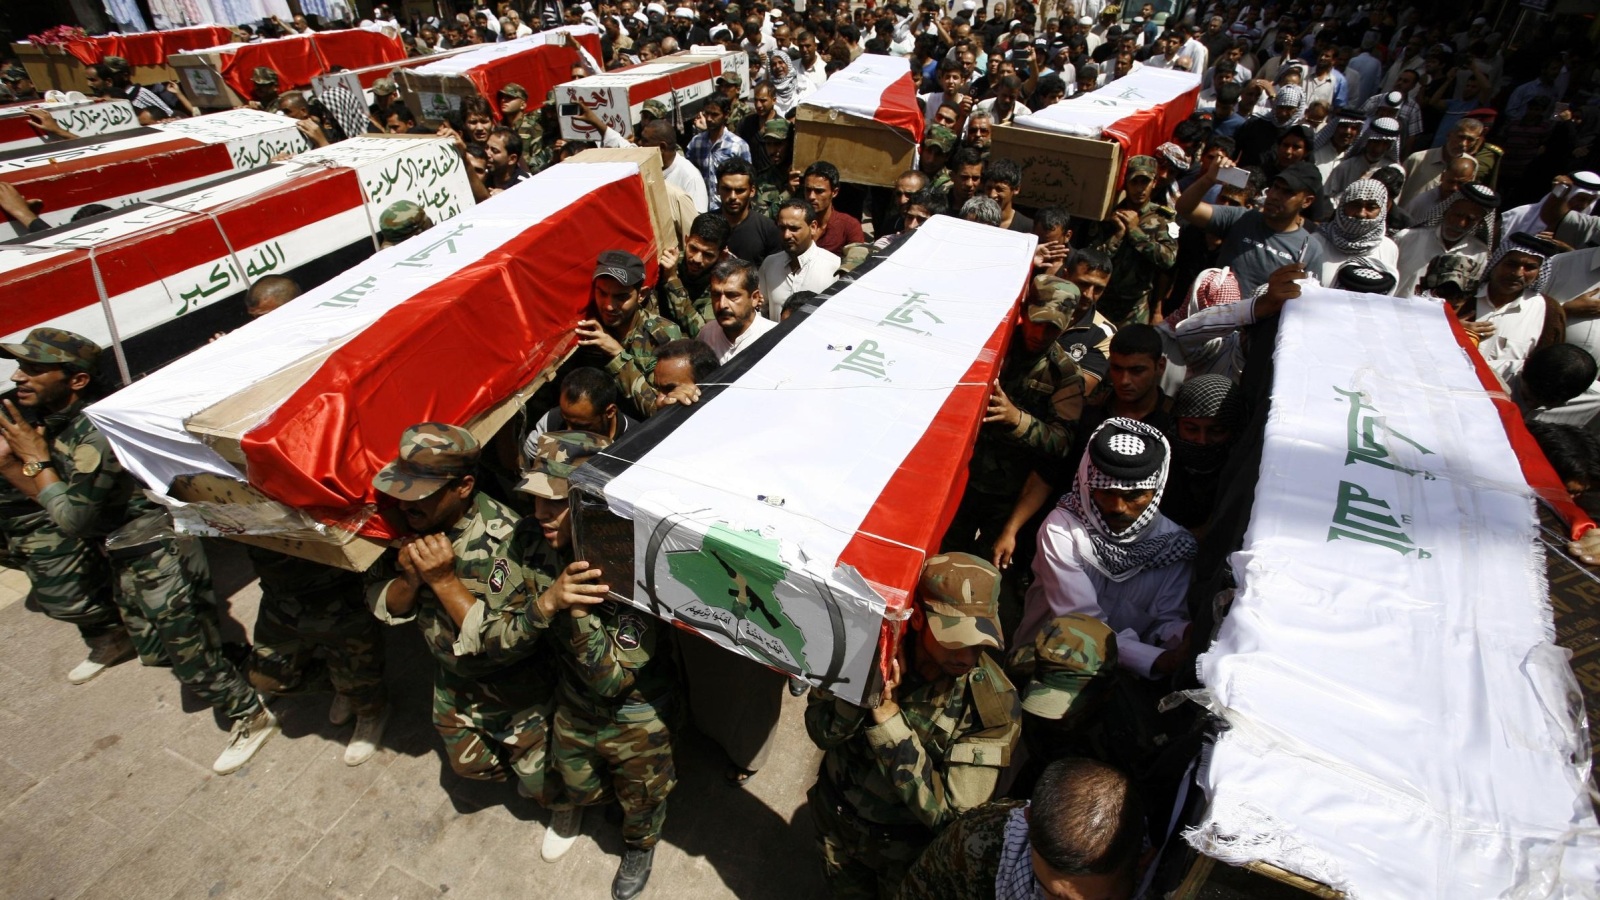 ‪جنازات يتم تشيعها في كربلاء لأفراد من الحشد الشعبي قتلوا في مدينة بيجي‬ (غيتي)